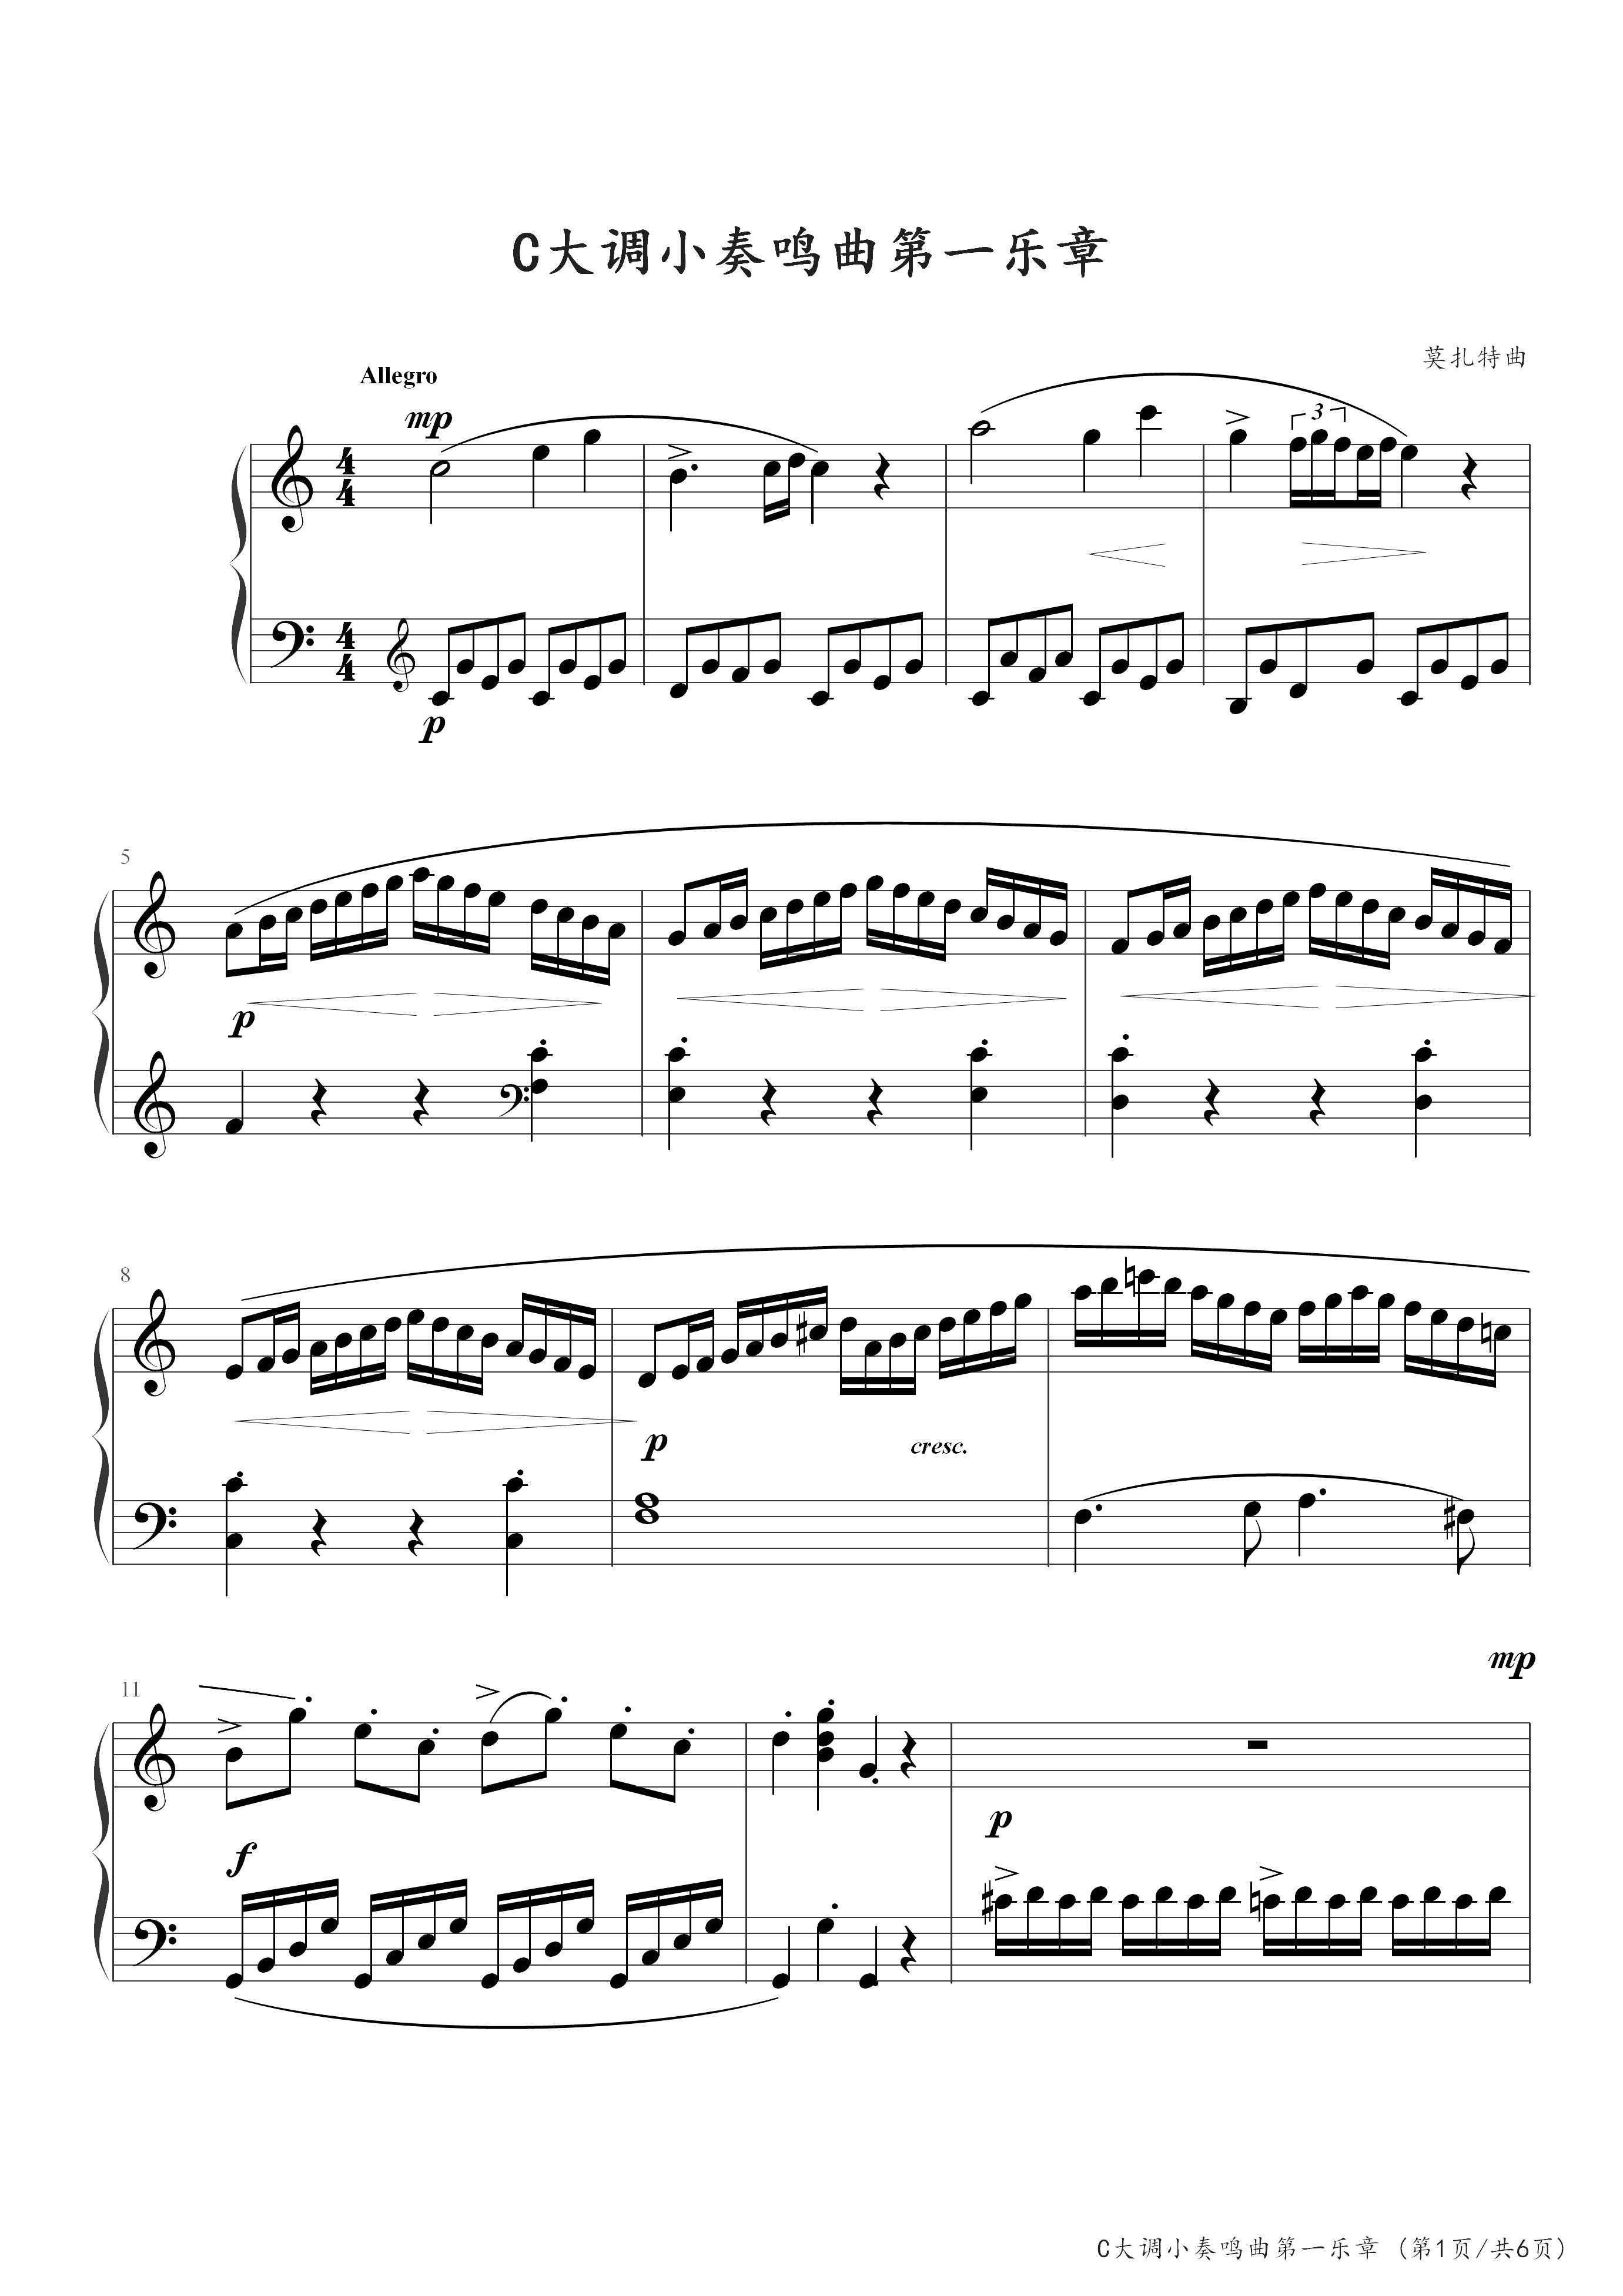 c大调小奏鸣曲第一乐章(莫扎特)-莫扎特-c调-流行钢琴五线谱